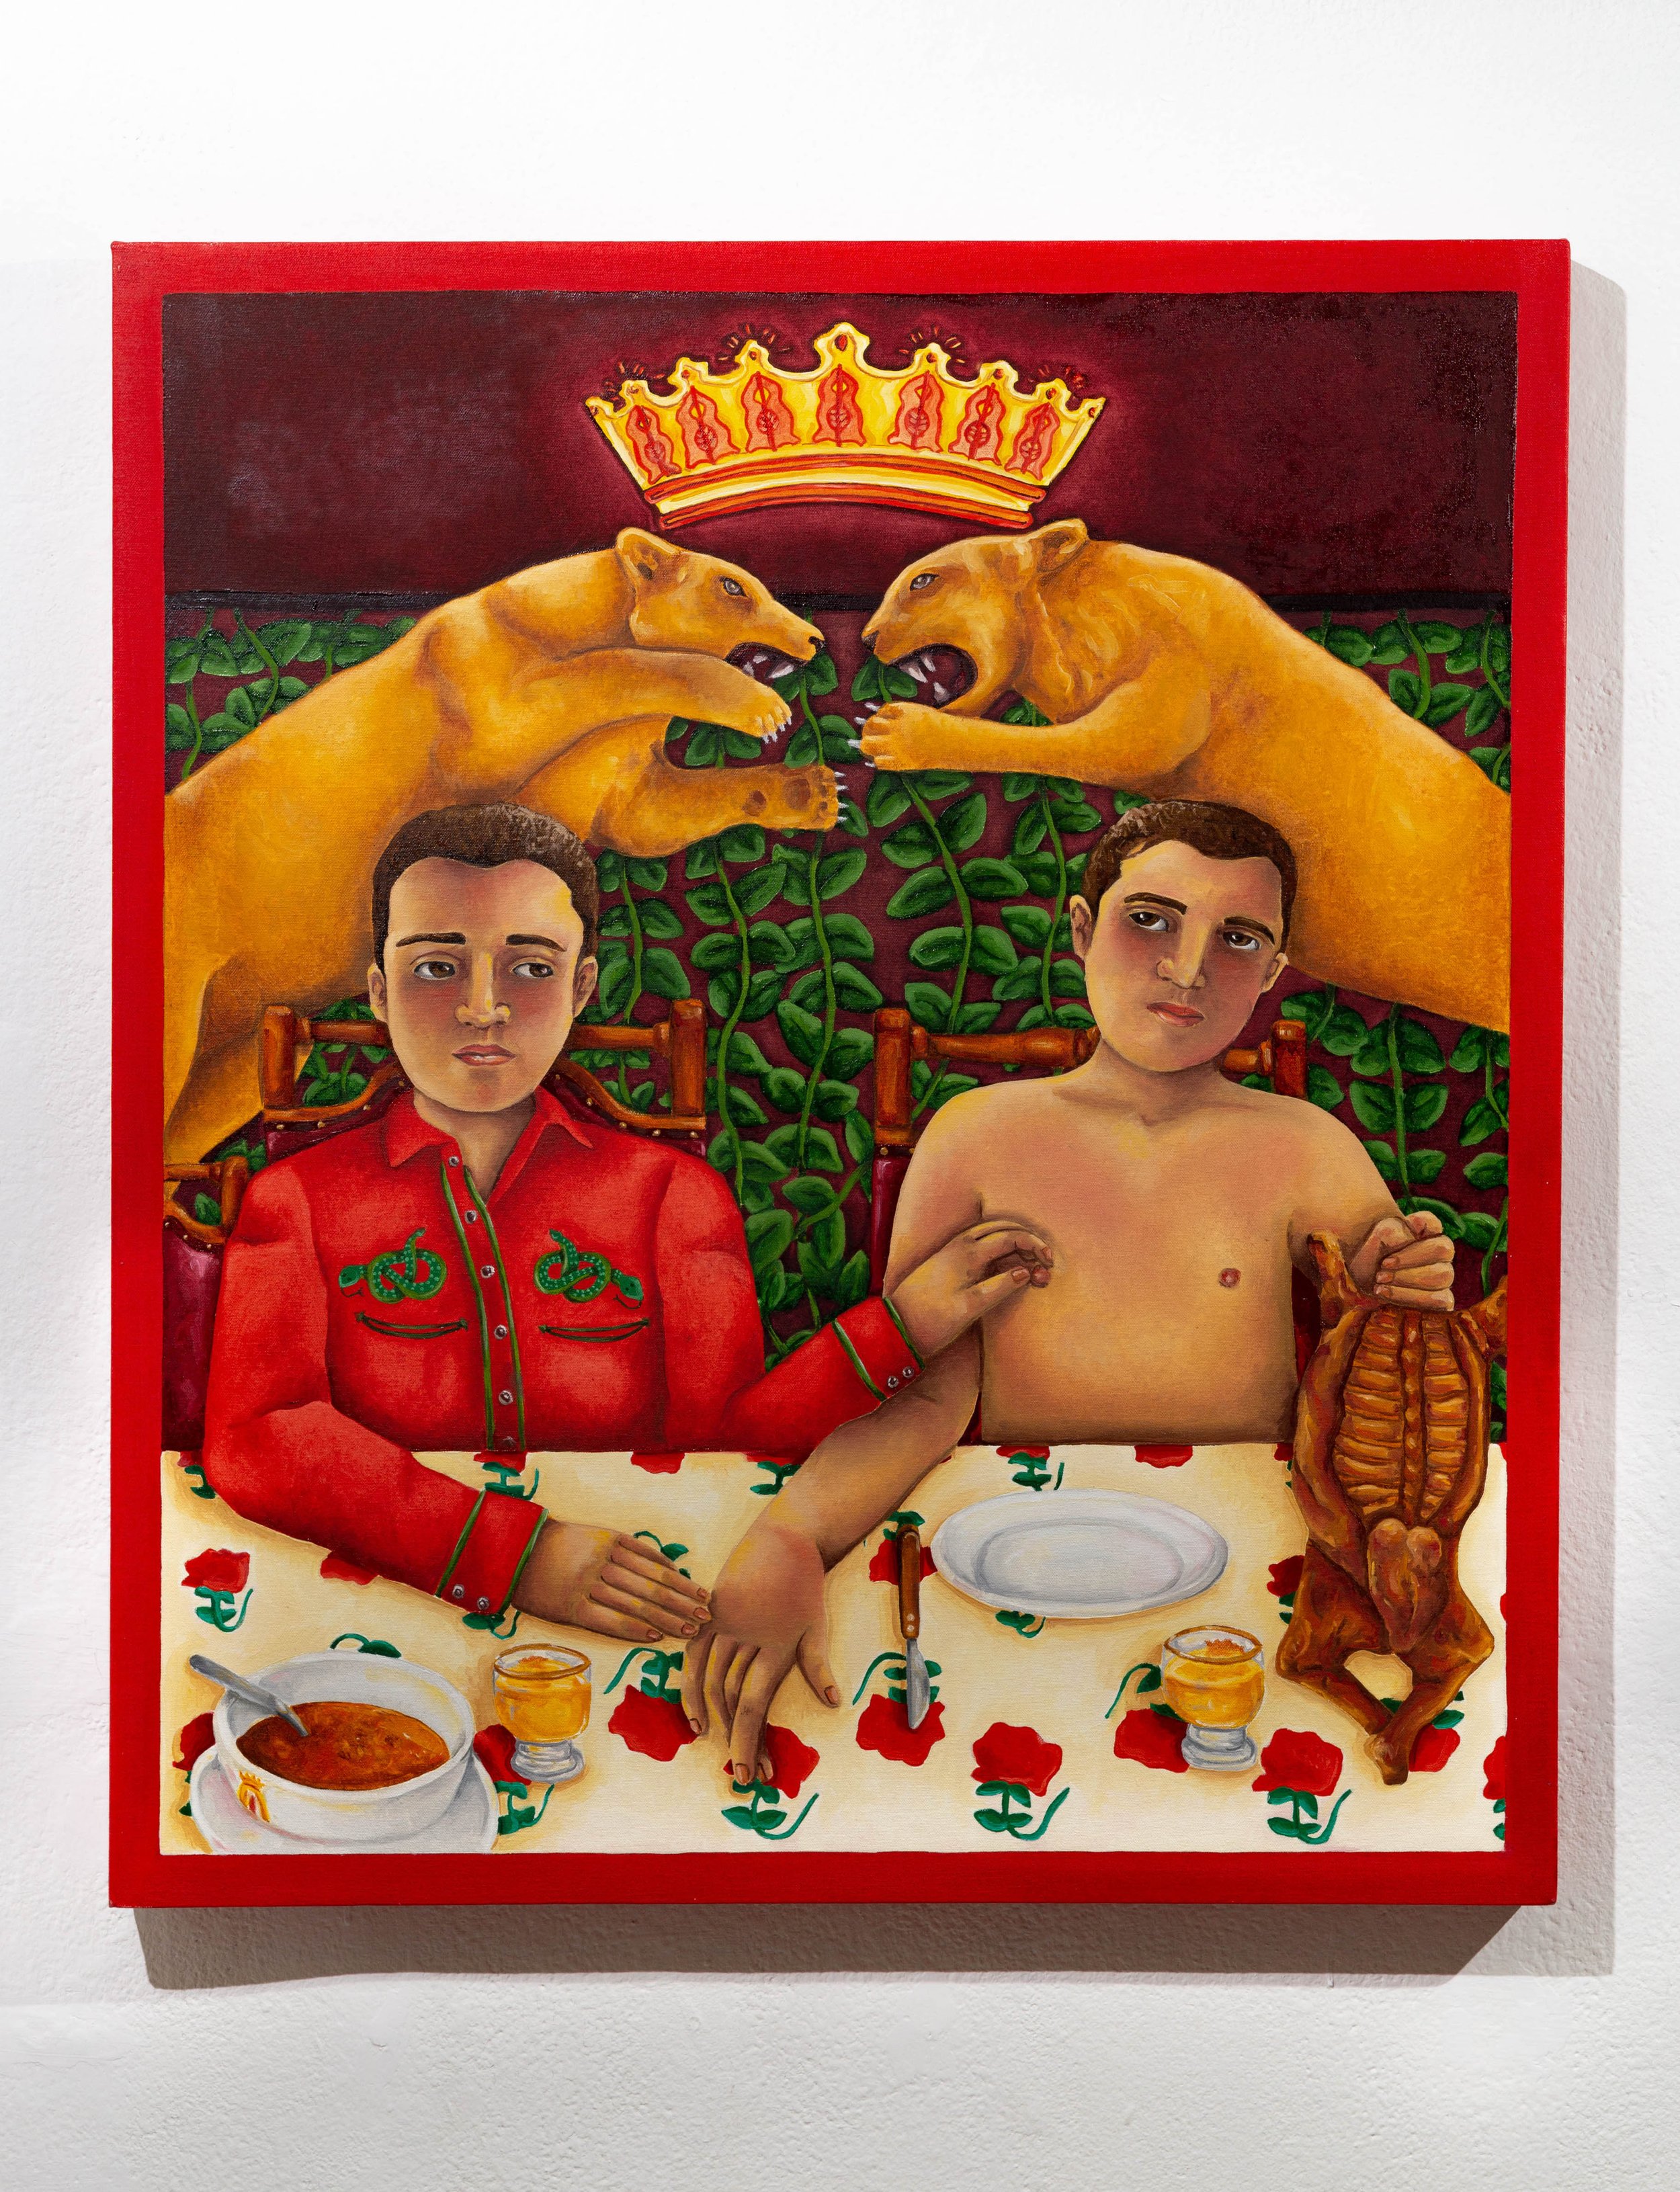   Juego de manos es de villanos , 28” x 32”, oil on canvas, 2017     